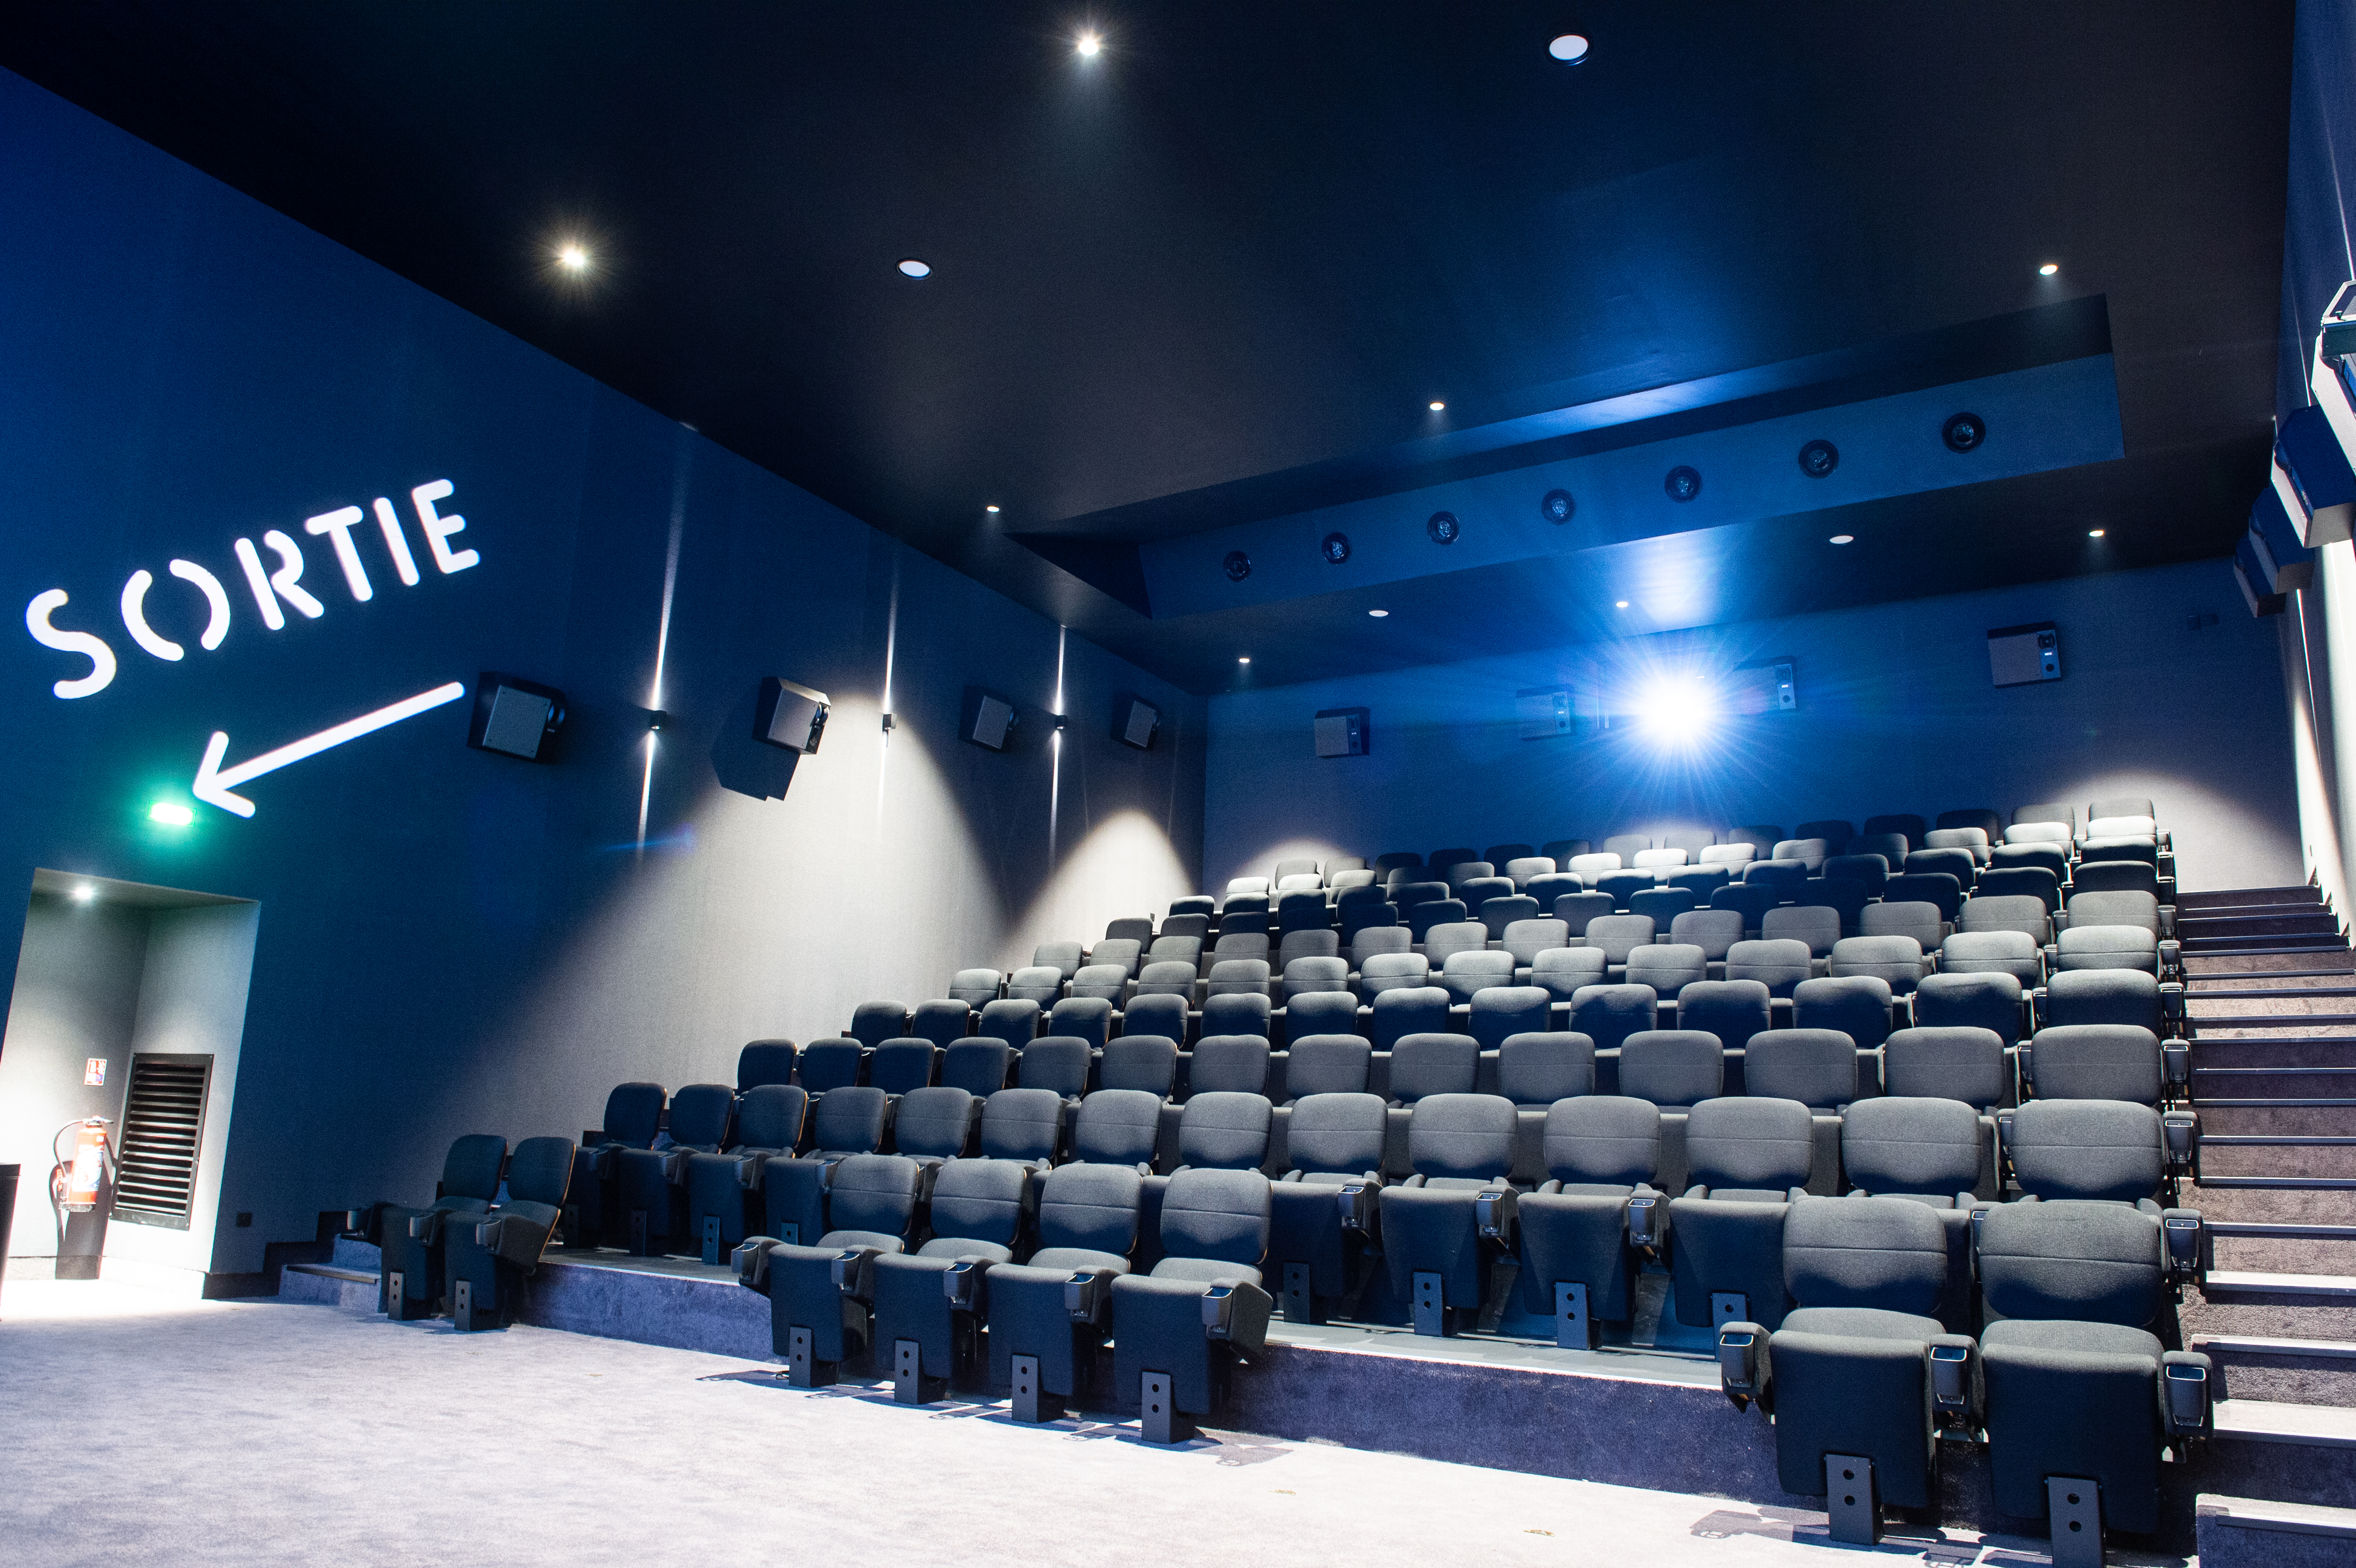 <b>Cinéma UGC Toulouse</b>
<br><p>Caparol / Amphibolin et NespriTeXX Mat</br></p>